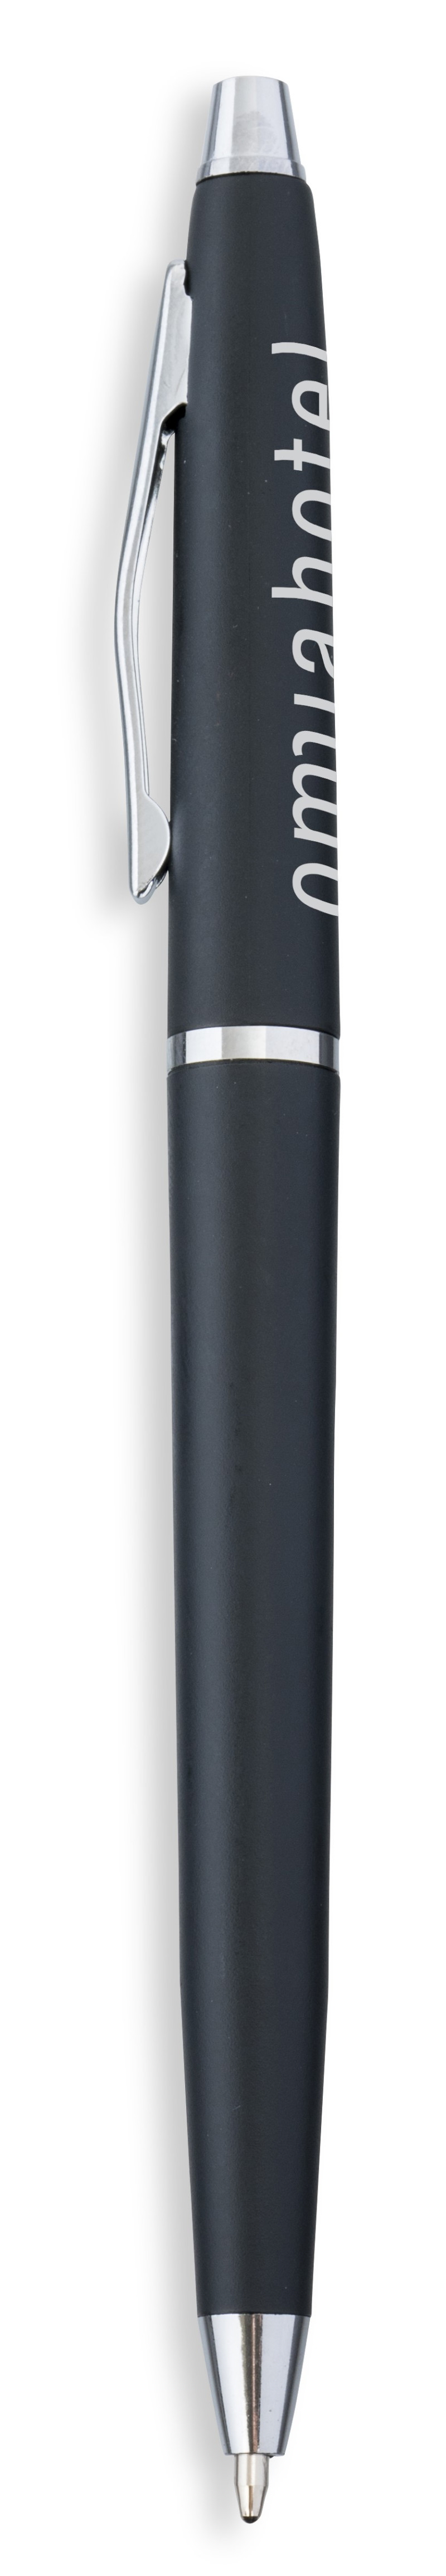 Metronome Ball Pen